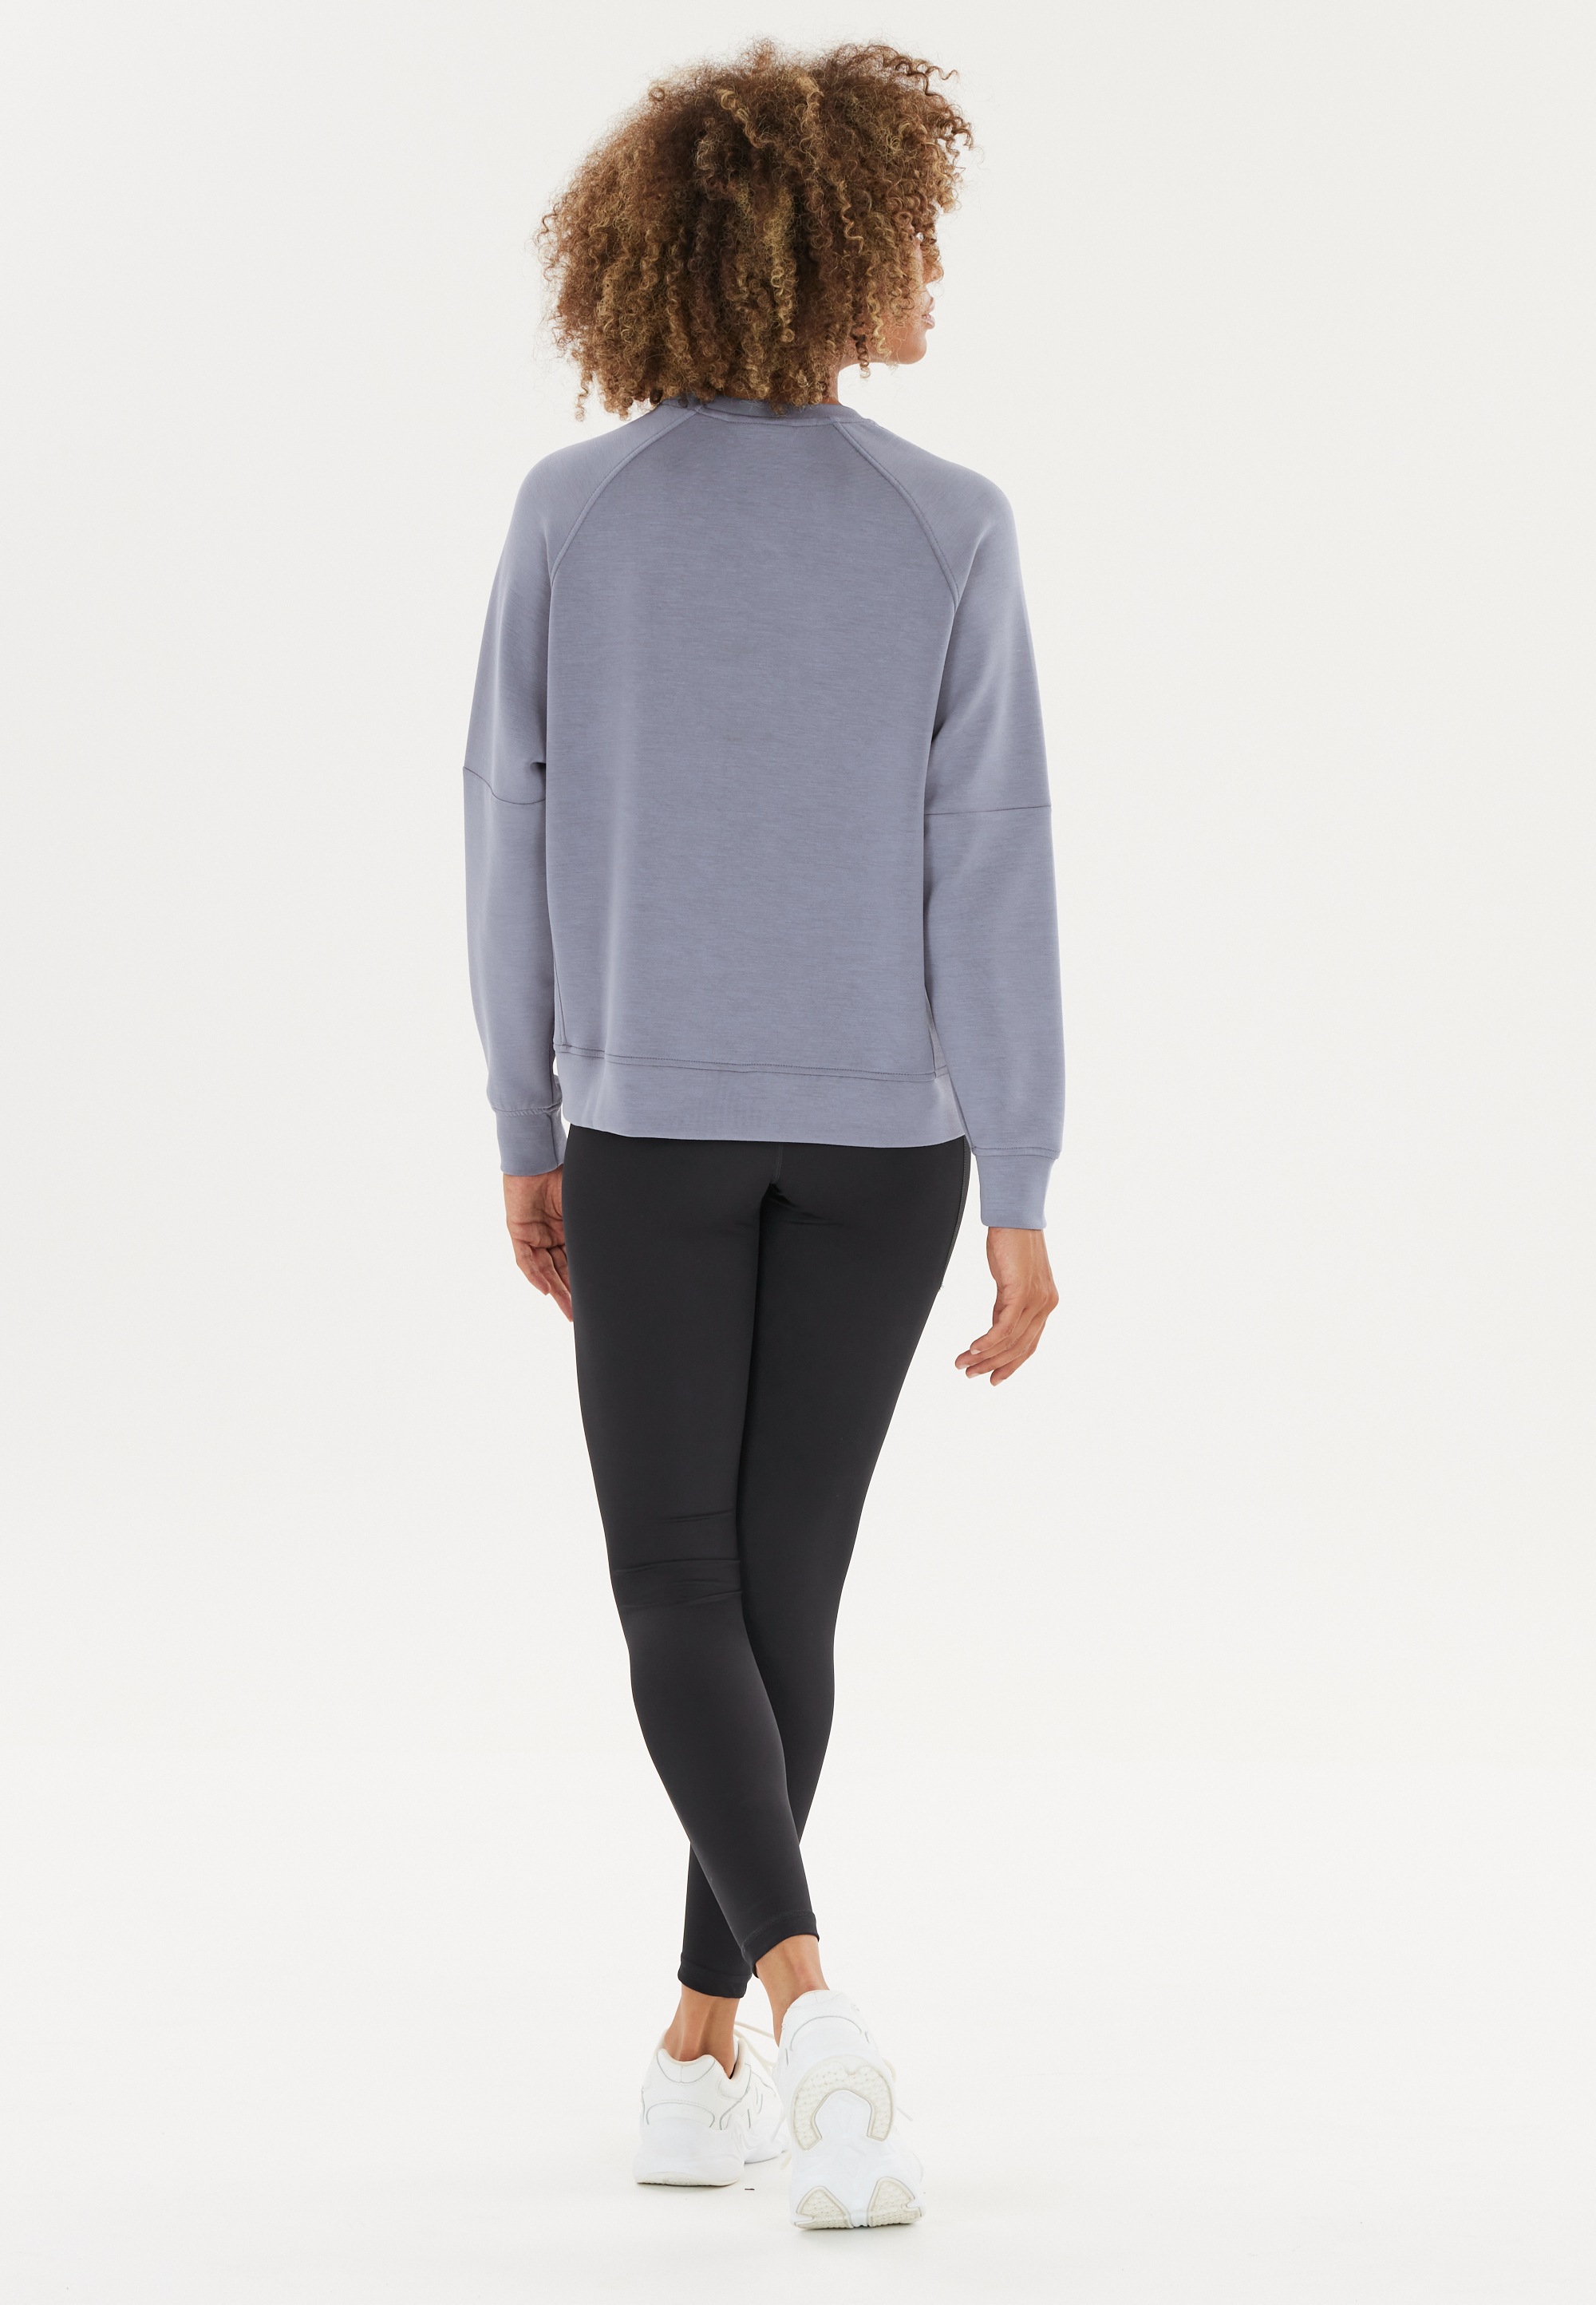 ATHLECIA Sweatshirt extra BAUR online weichem | bestellen »Jacey«, Material aus